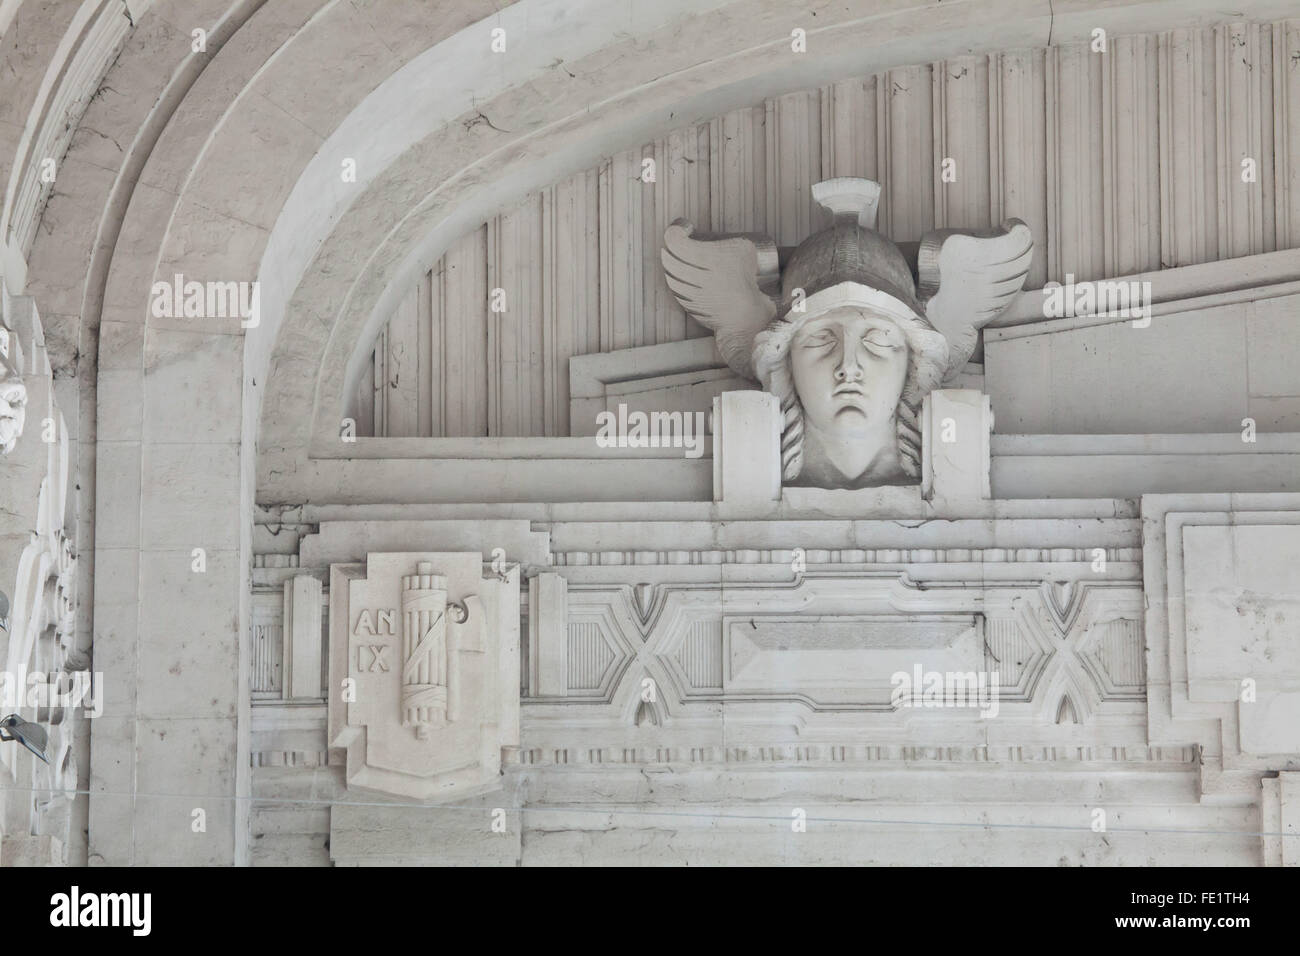 Il simbolo fascista e la testa di mercurio raffigurato nel vestibolo di  entrata della stazione ferroviaria centrale (la Stazione di Milano Centrale)  a Milano, lombardia, italia. Numero IX significa nono anno dell'era